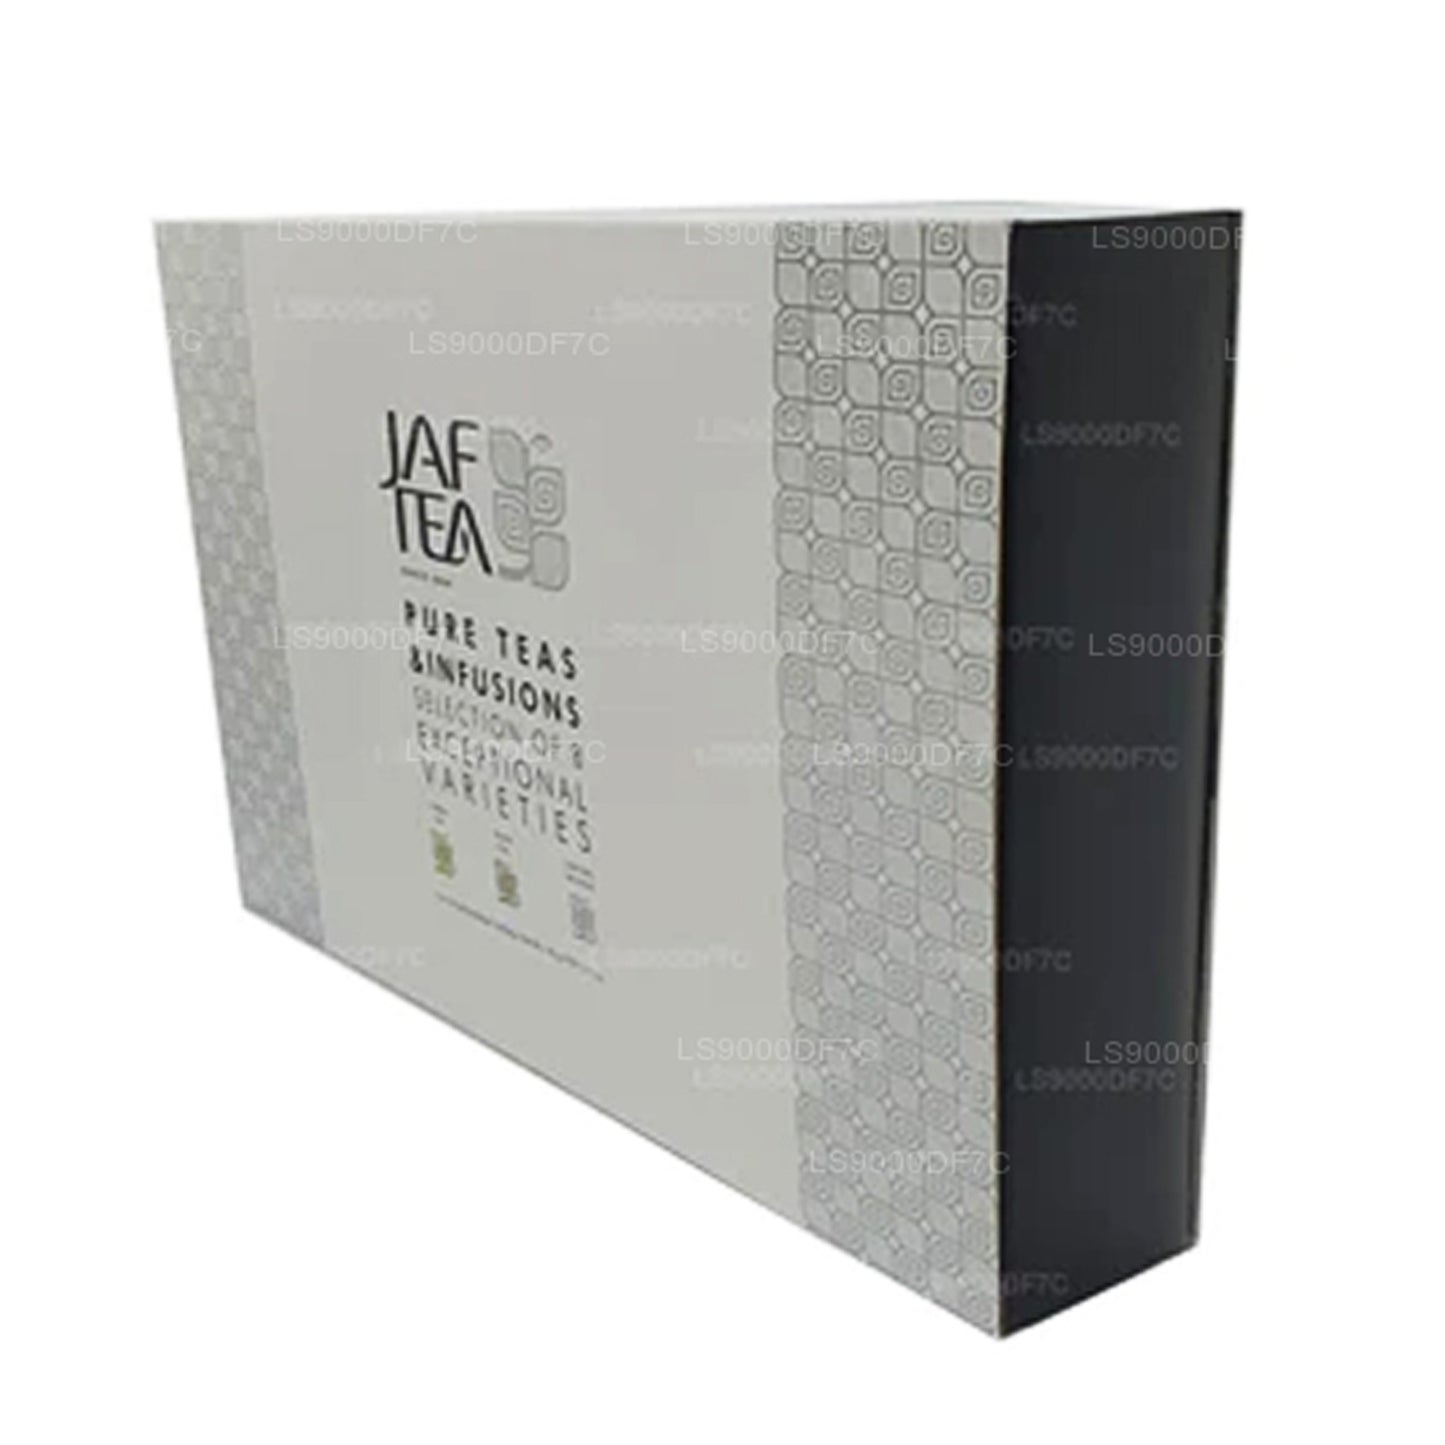 Jaf Çay Saf Çaylar ve İnfüzyonlar (145g) 80 Çay Poşetleri